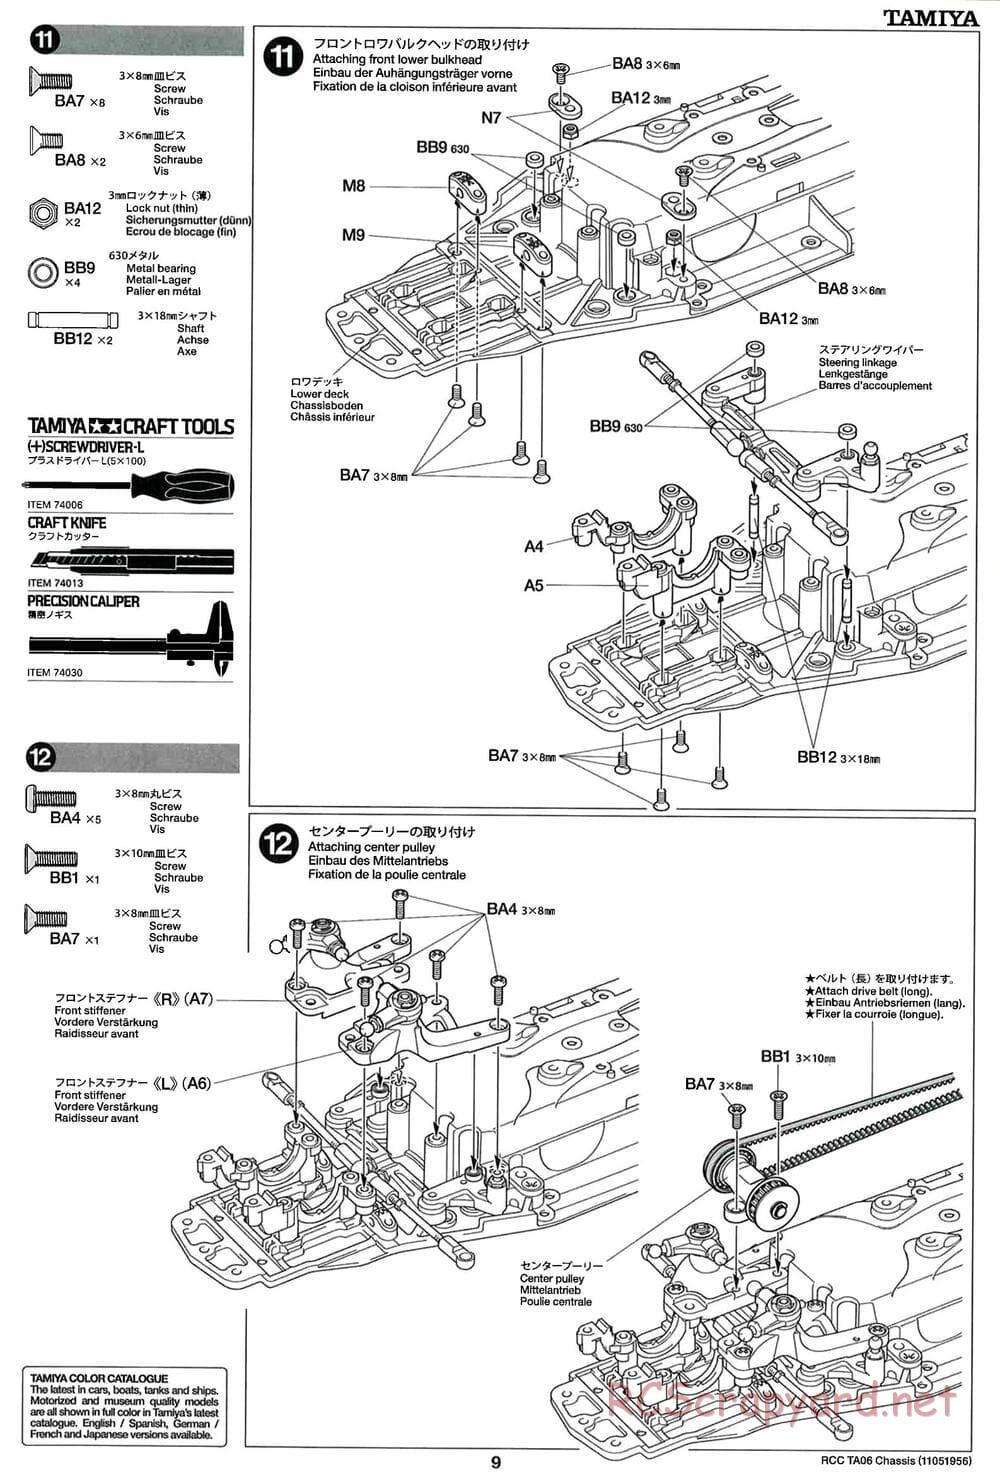 Tamiya - TA06 Chassis - Manual - Page 9